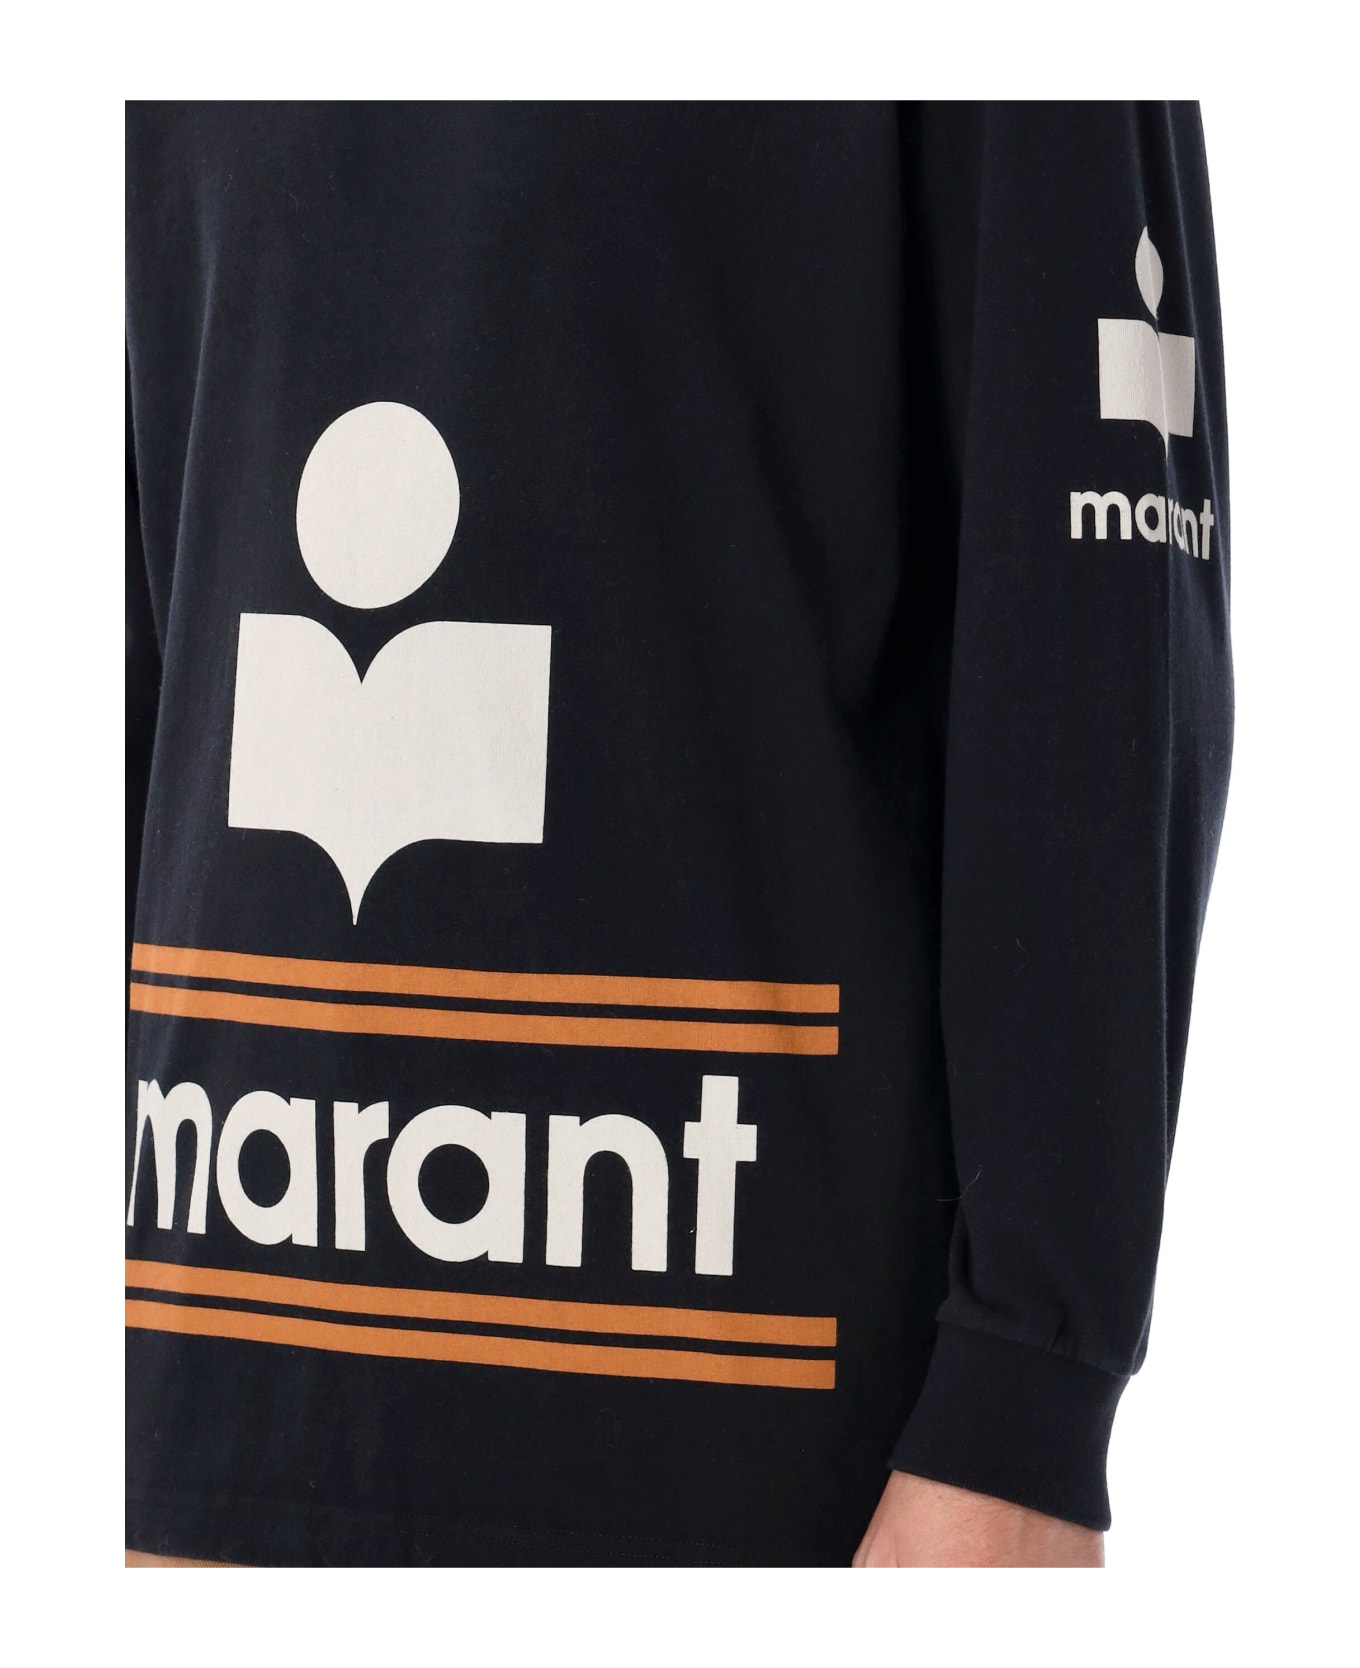 Isabel Marant Gianni Cotton Tee-shirt - BLACK